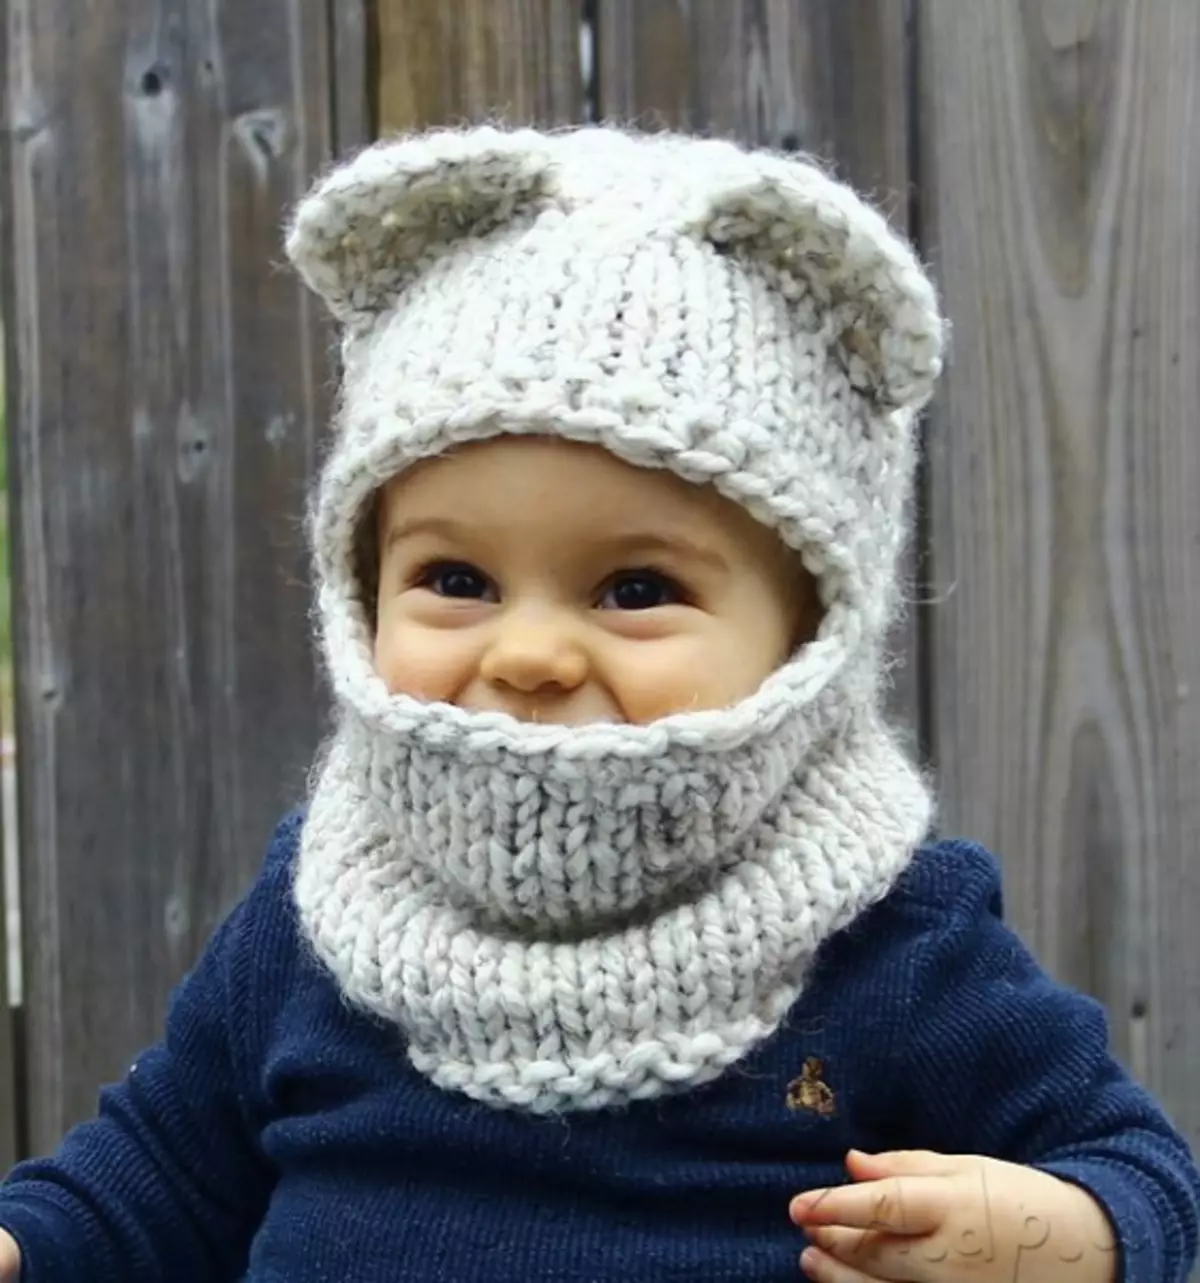 Baby Crochet Cap: Skema en beskriuwingskappen mei earen foar bern mei foto en fideo